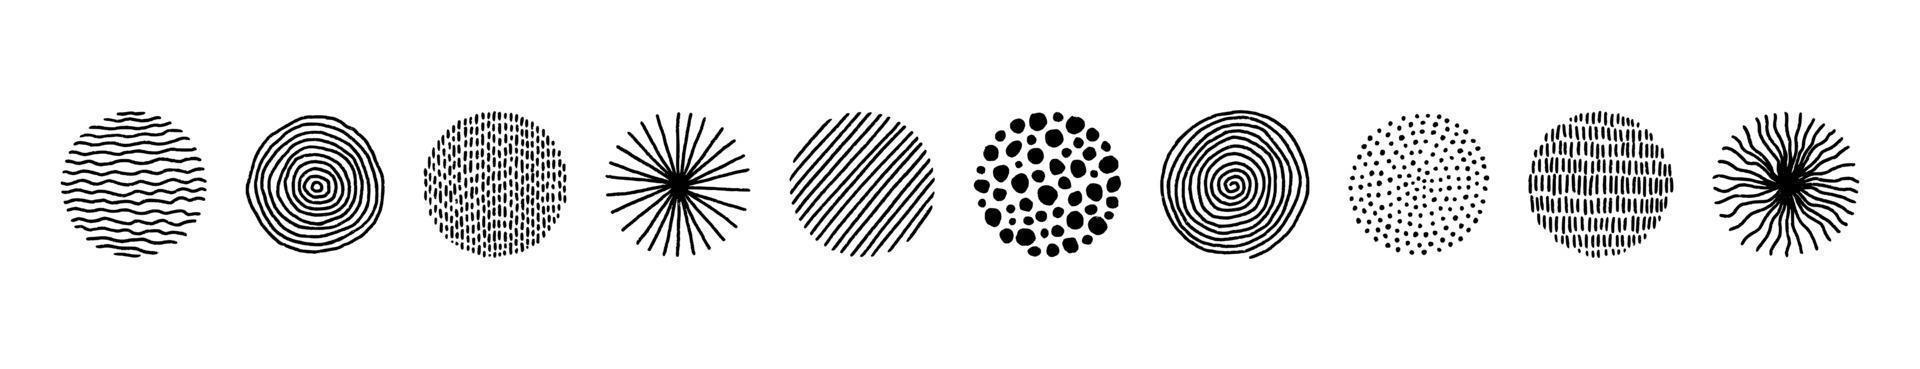 handritade cirklar med doodle textur. modern abstrakt uppsättning svart rund form med linjer, cirklar, droppar. handritade organiska doodle former. samling vektorillustrationer isolerad på vit bakgrund vektor